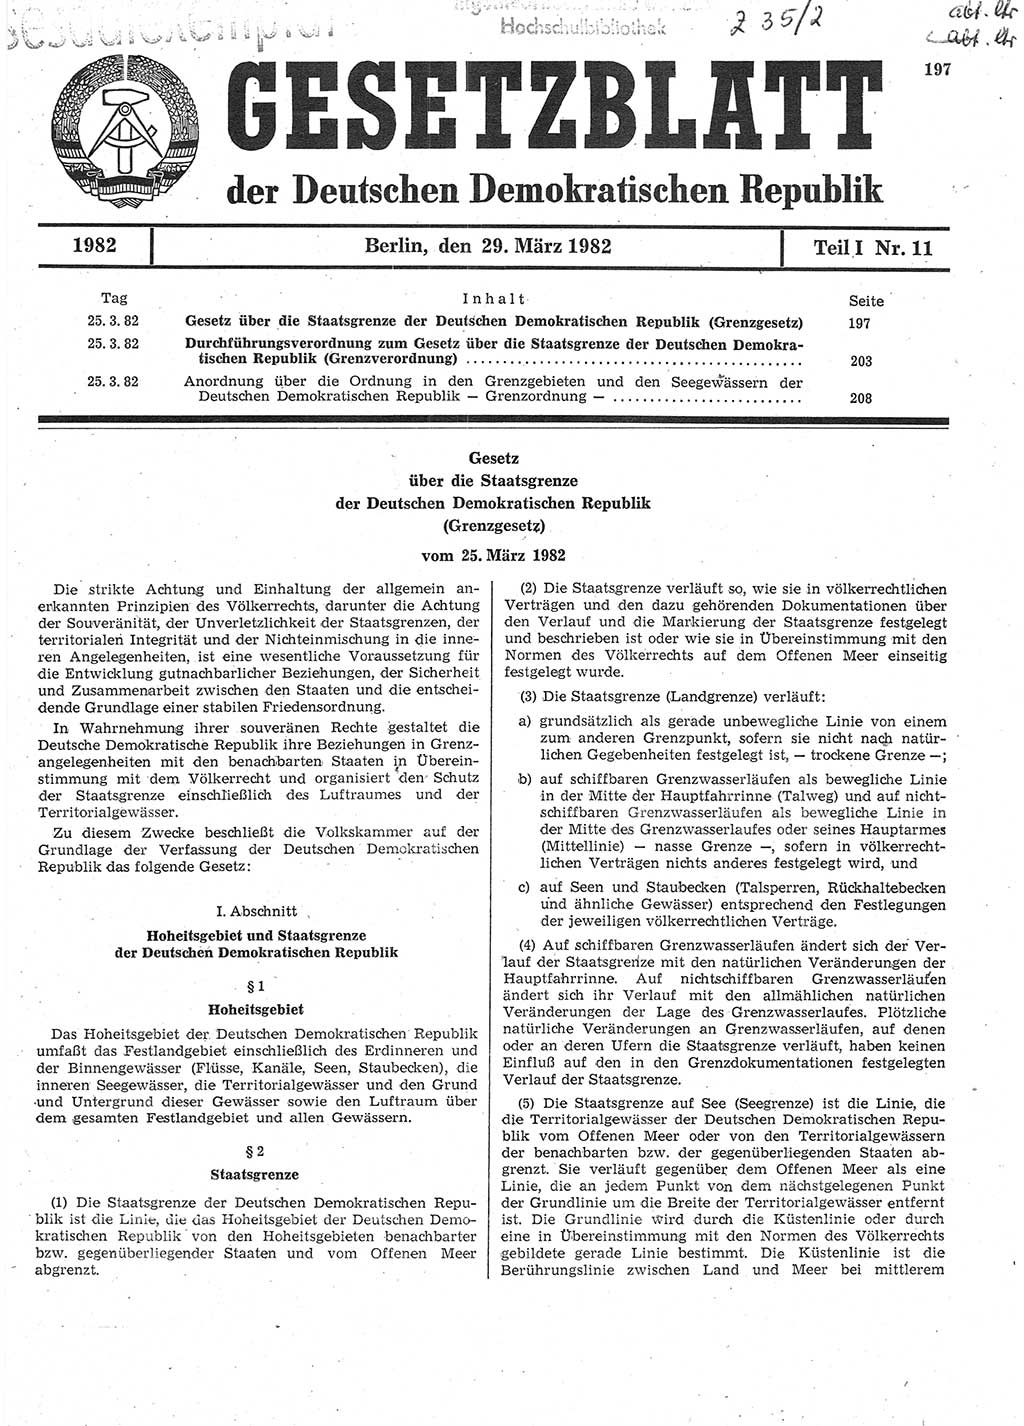 Gesetzblatt (GBl.) der Deutschen Demokratischen Republik (DDR) Teil Ⅰ 1982, Seite 197 (GBl. DDR Ⅰ 1982, S. 197)